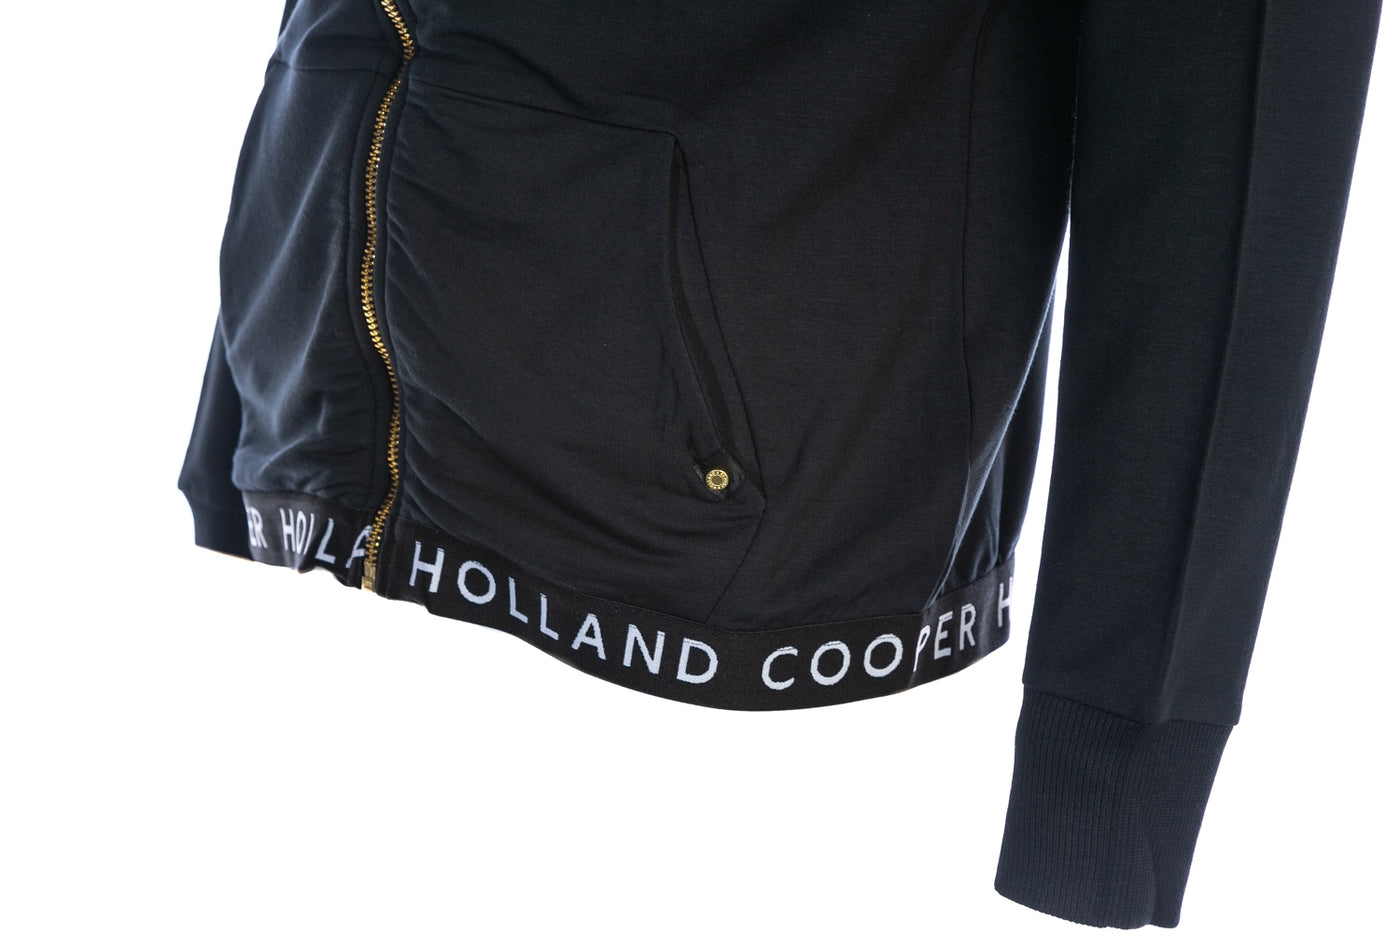 Holland Cooper Zip Lounge Ladies Hoodie Sweat Top in Black